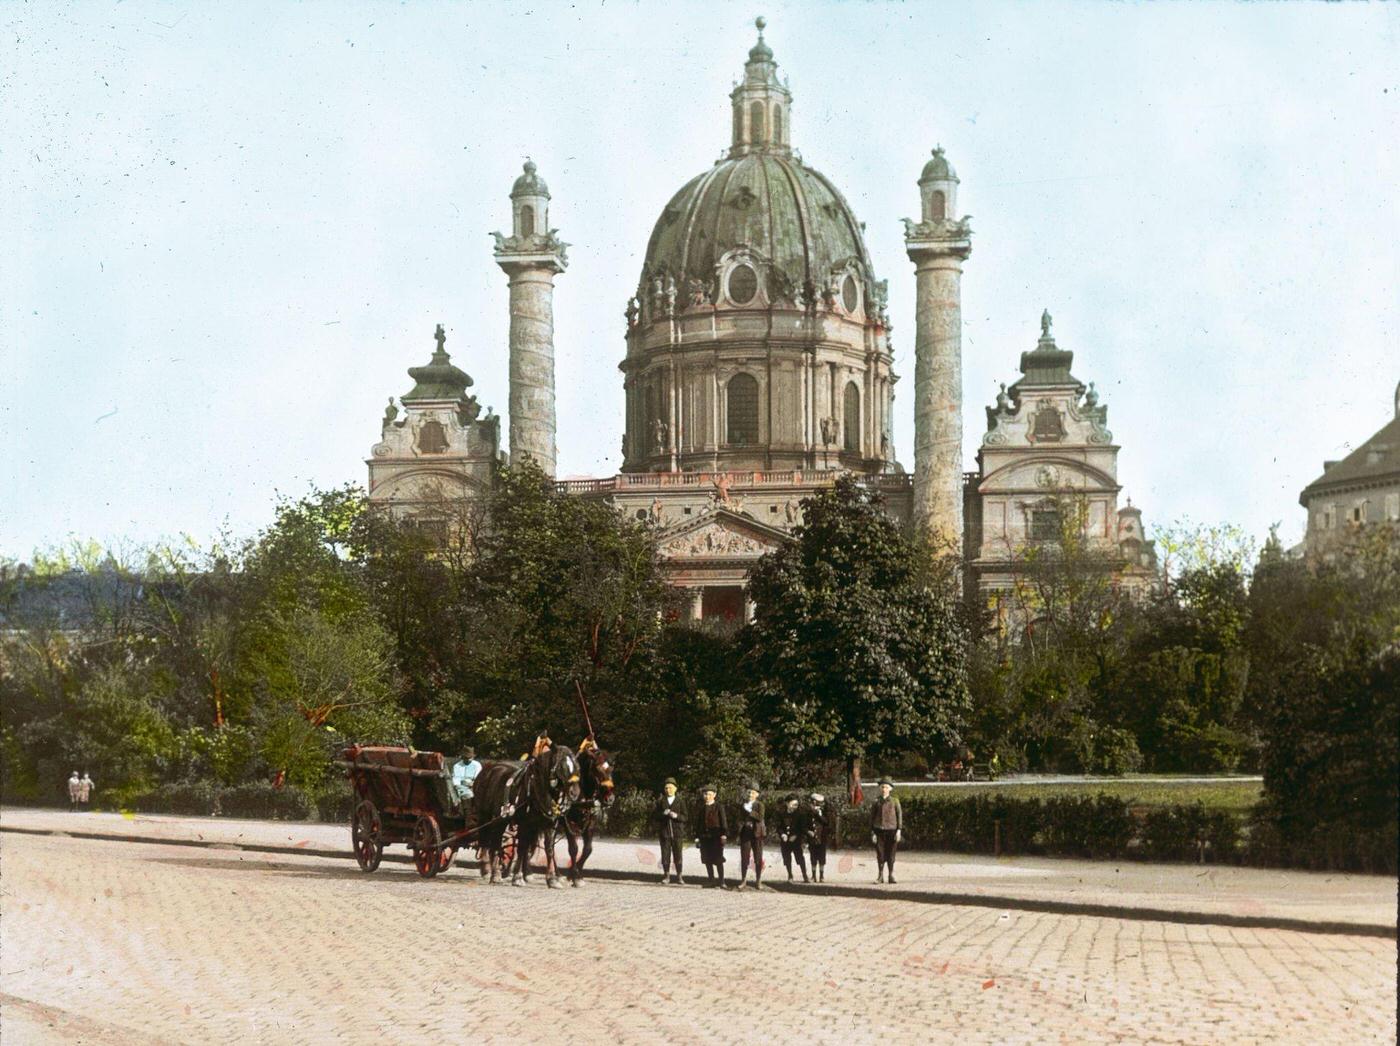 Karlskirche (St. Charles' Church) at Karlsplatz in Vienna's 4th district, 1905.